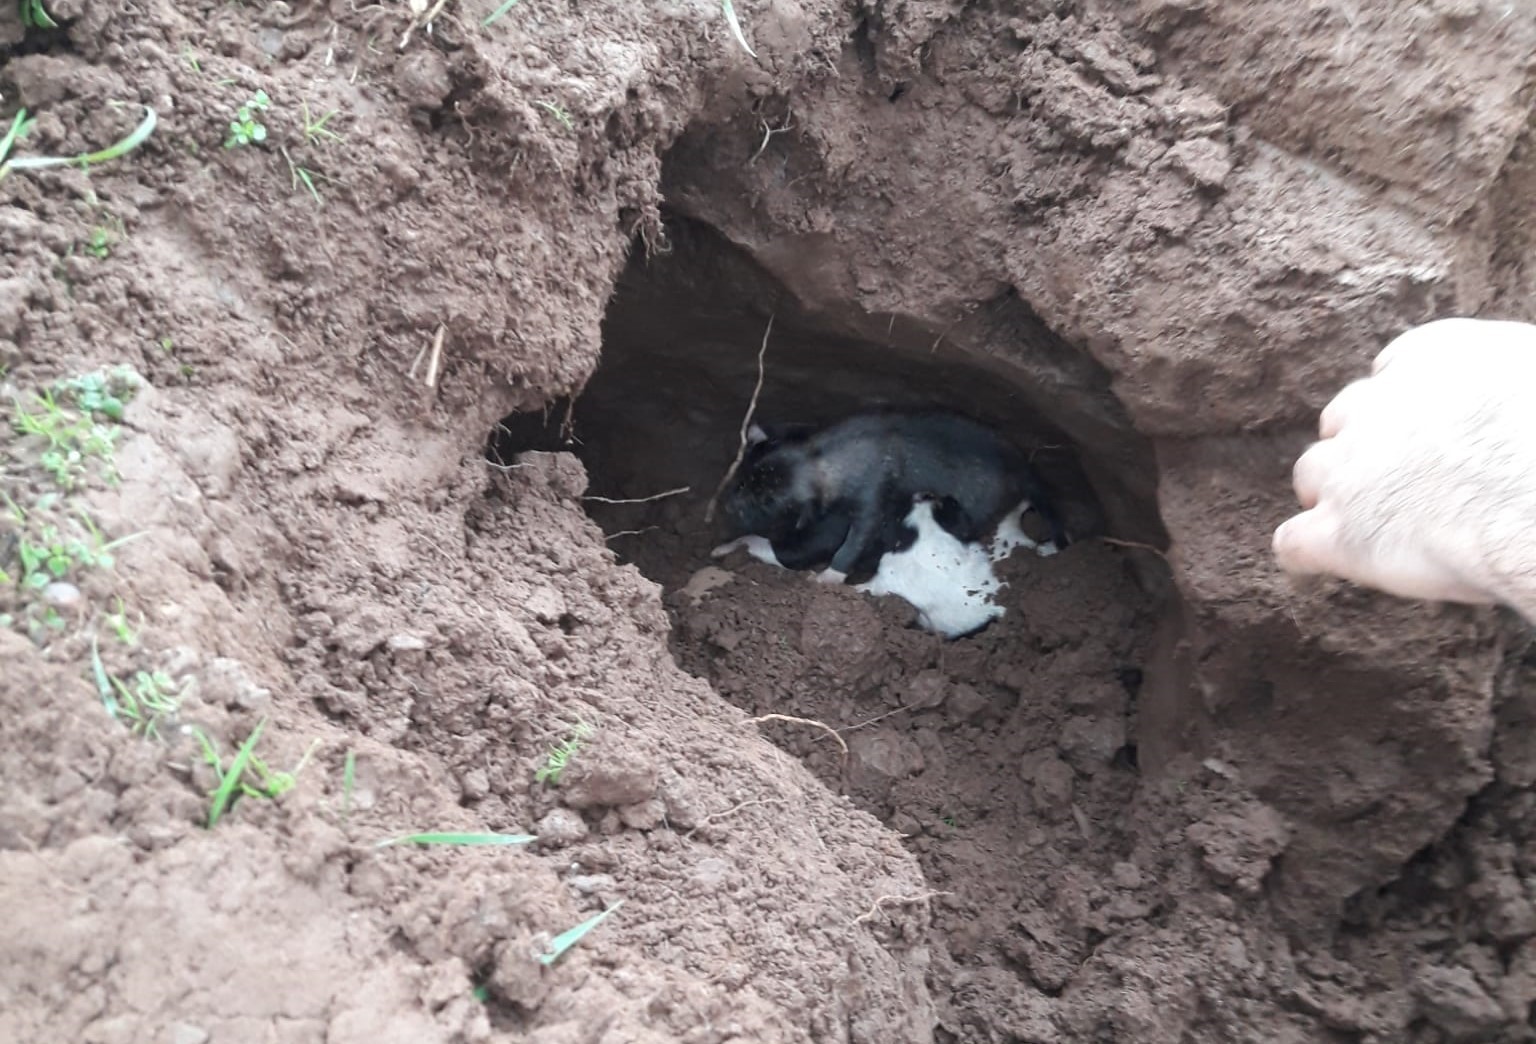 Göçük altında kalan yavru köpekleri itfaiye kurtardı #aydin